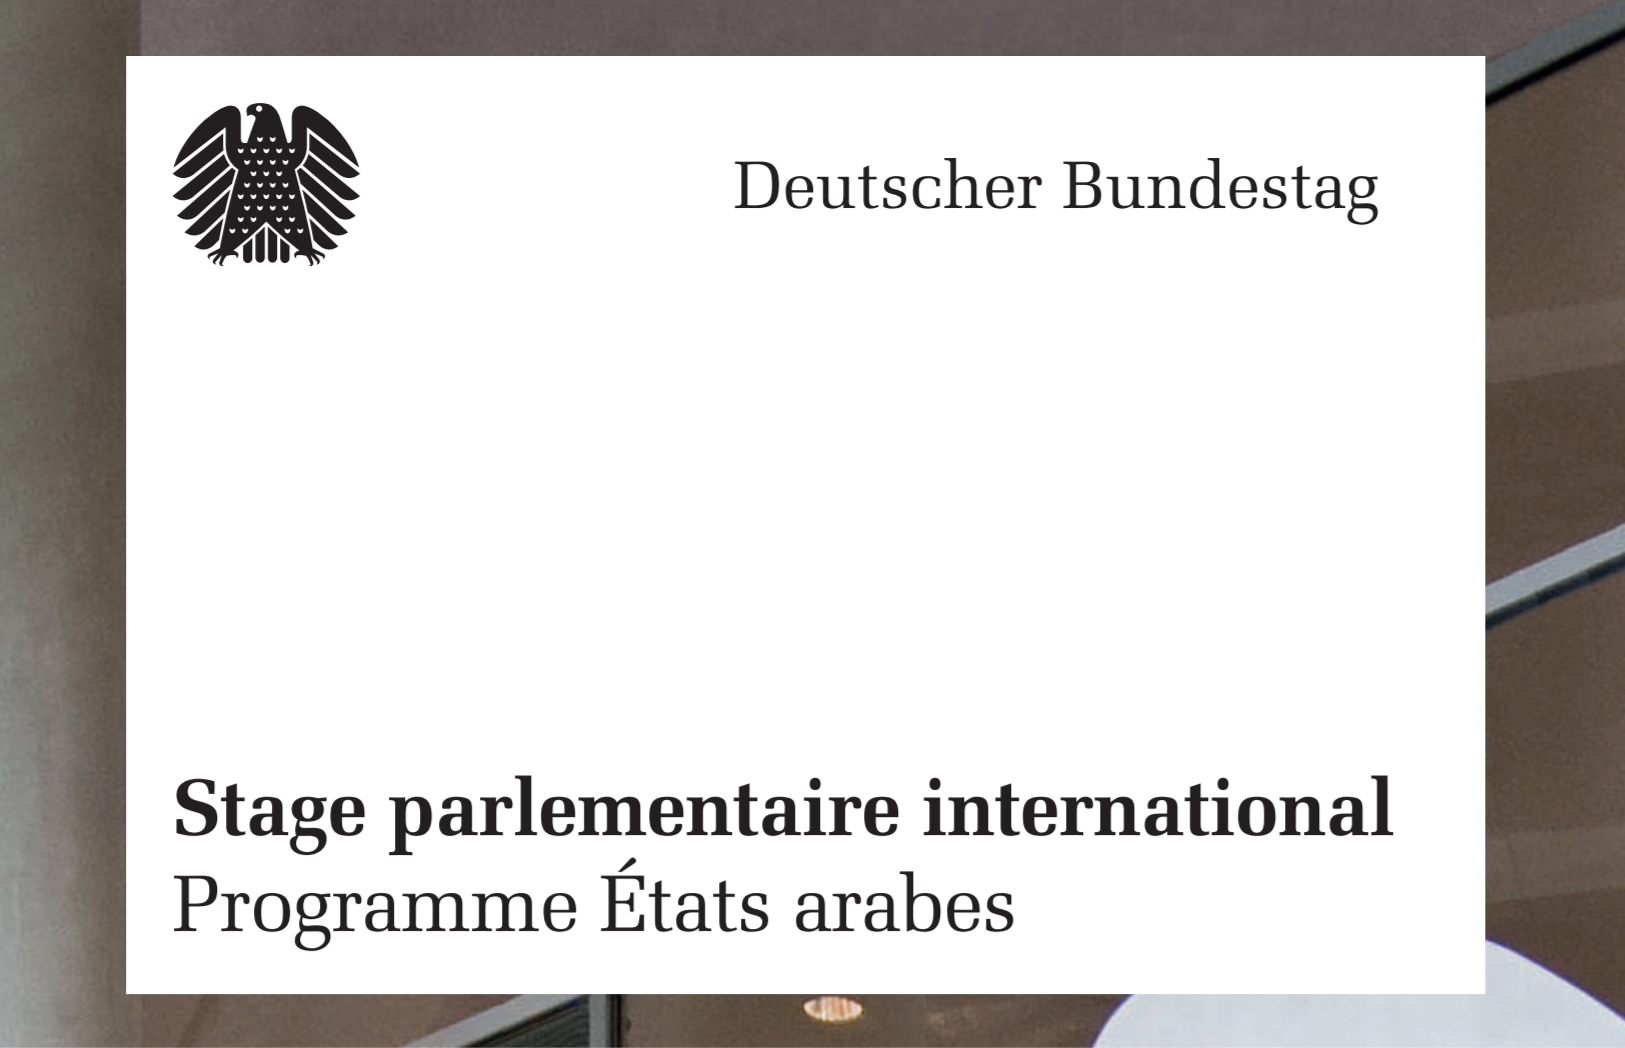 Le Bundestag Allemand lance un programme de stage parlementaire international à Berlin